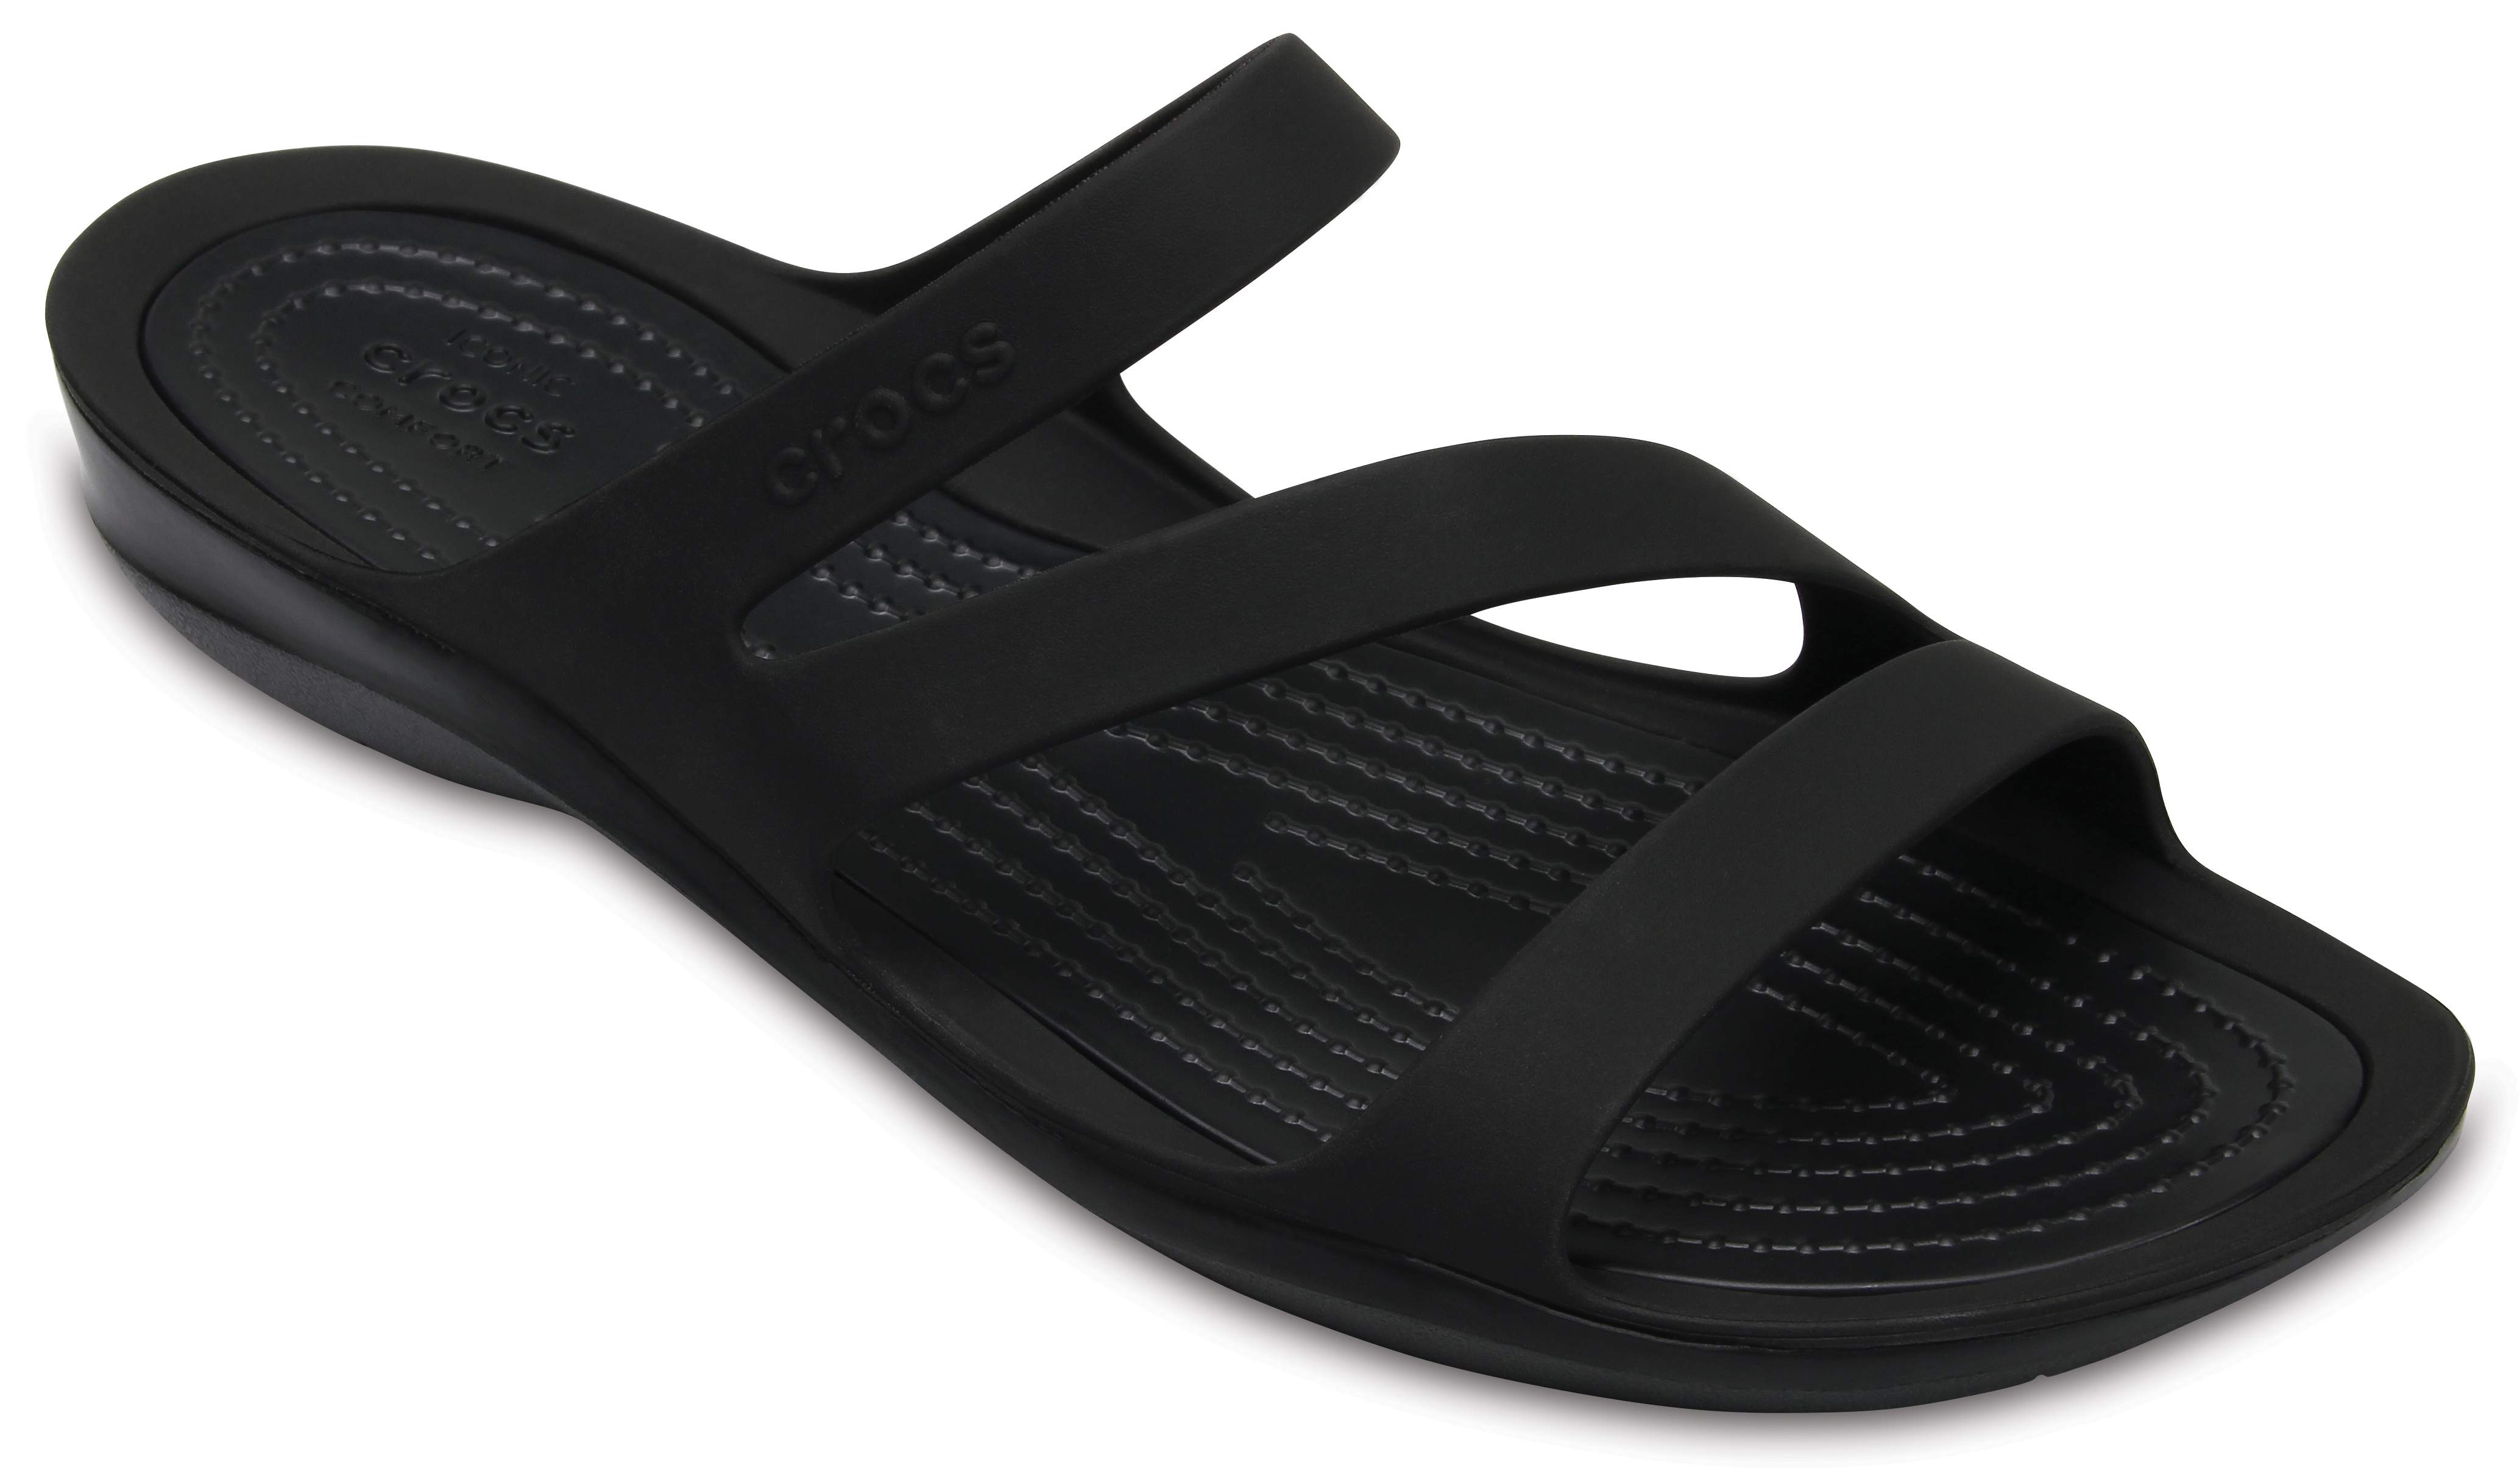 crocs women's swiftwater sandals